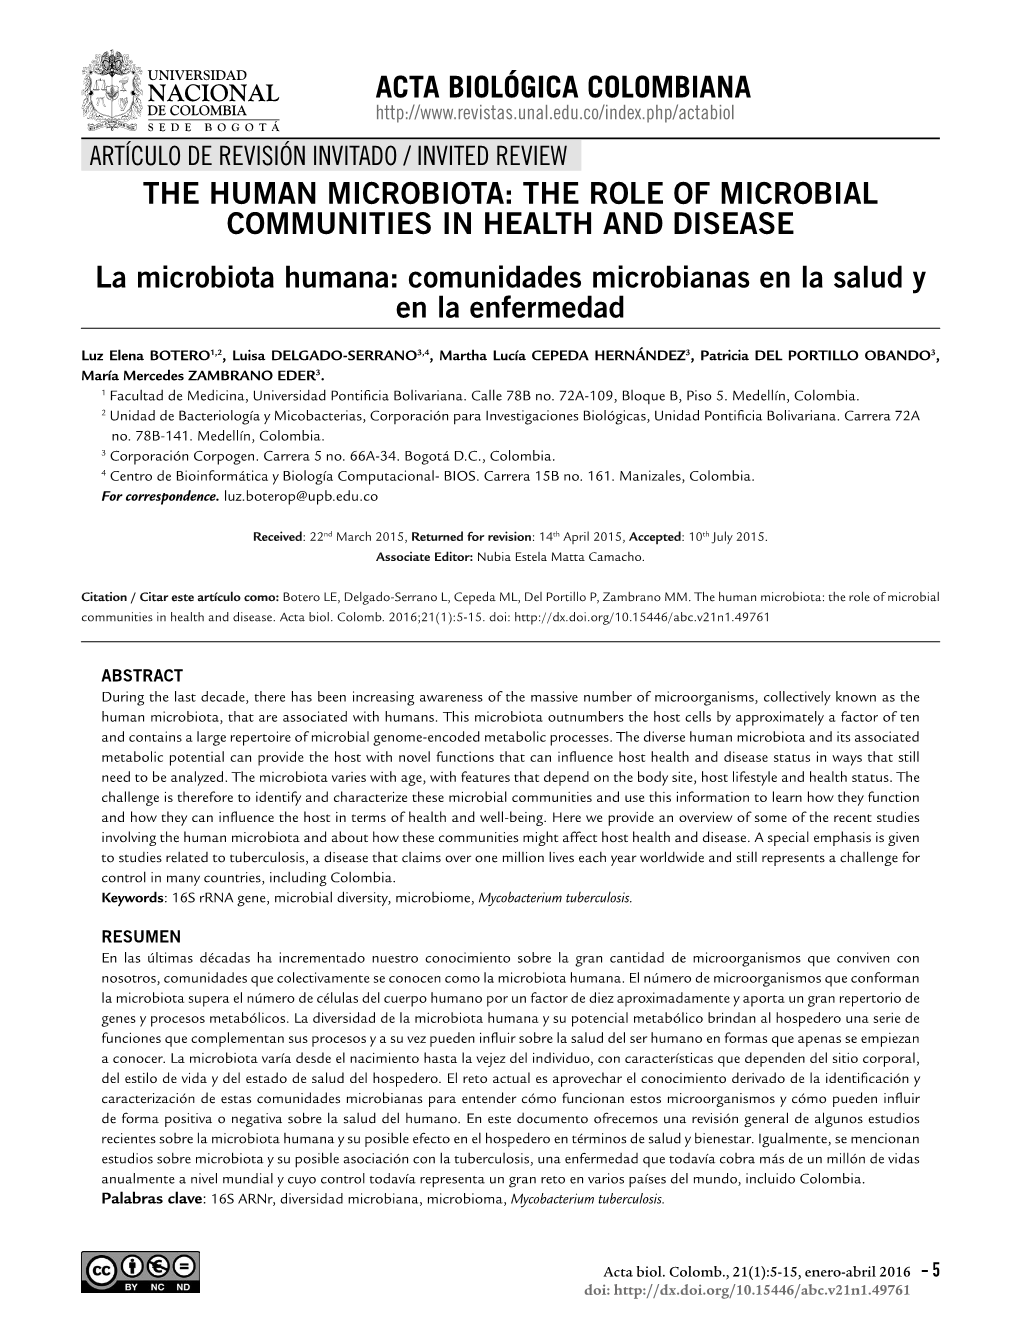 THE HUMAN MICROBIOTA: the ROLE of MICROBIAL COMMUNITIES in HEALTH and DISEASE La Microbiota Humana: Comunidades Microbianas En La Salud Y En La Enfermedad